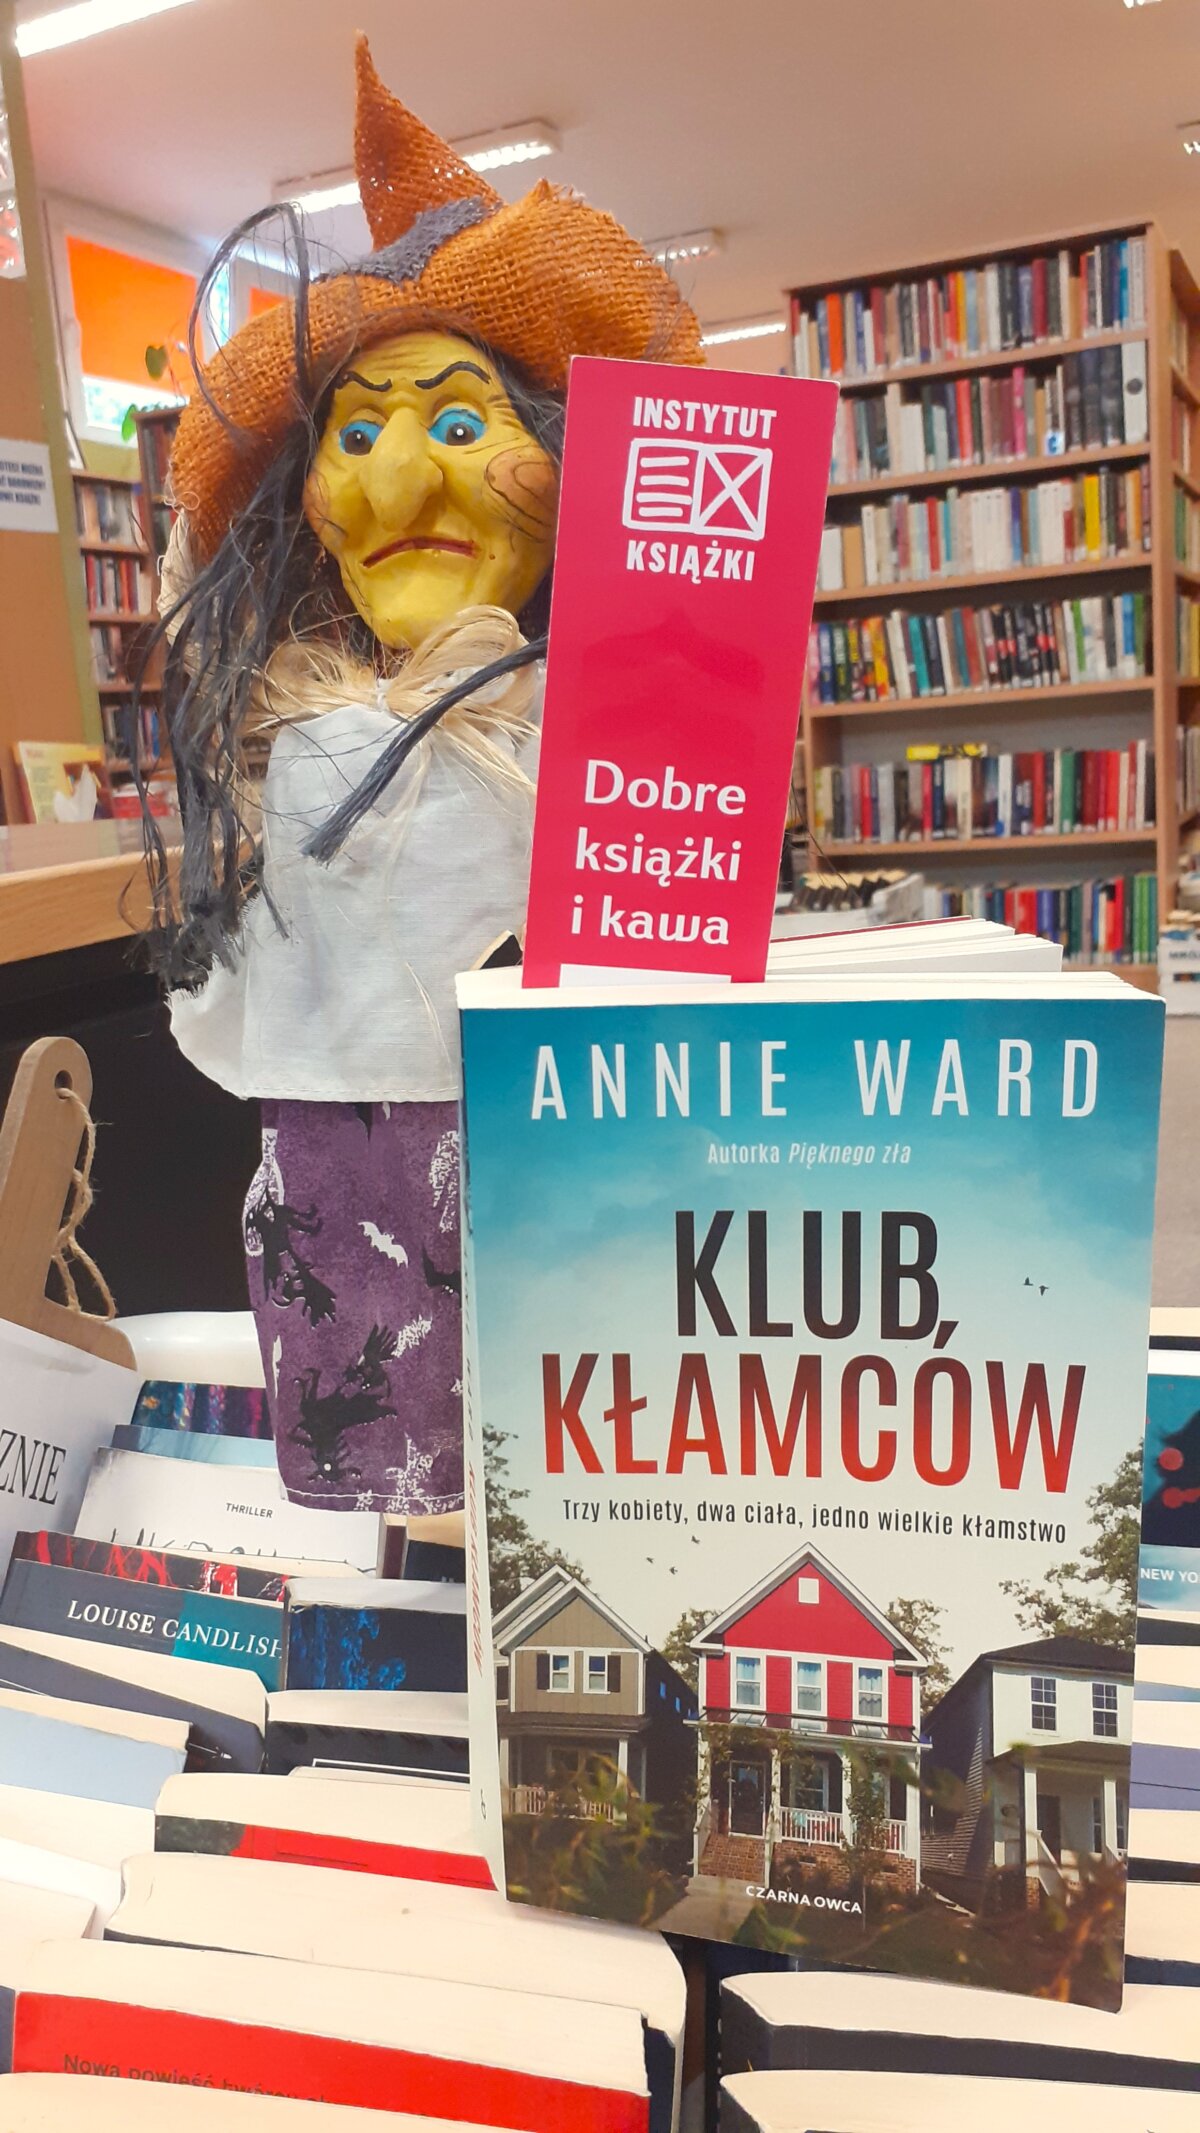 wyeksponowana książka „ Klub kłamców” Annie Wart. W tle postać czarownicy, nawiązująca do charakterów bohaterów książki.